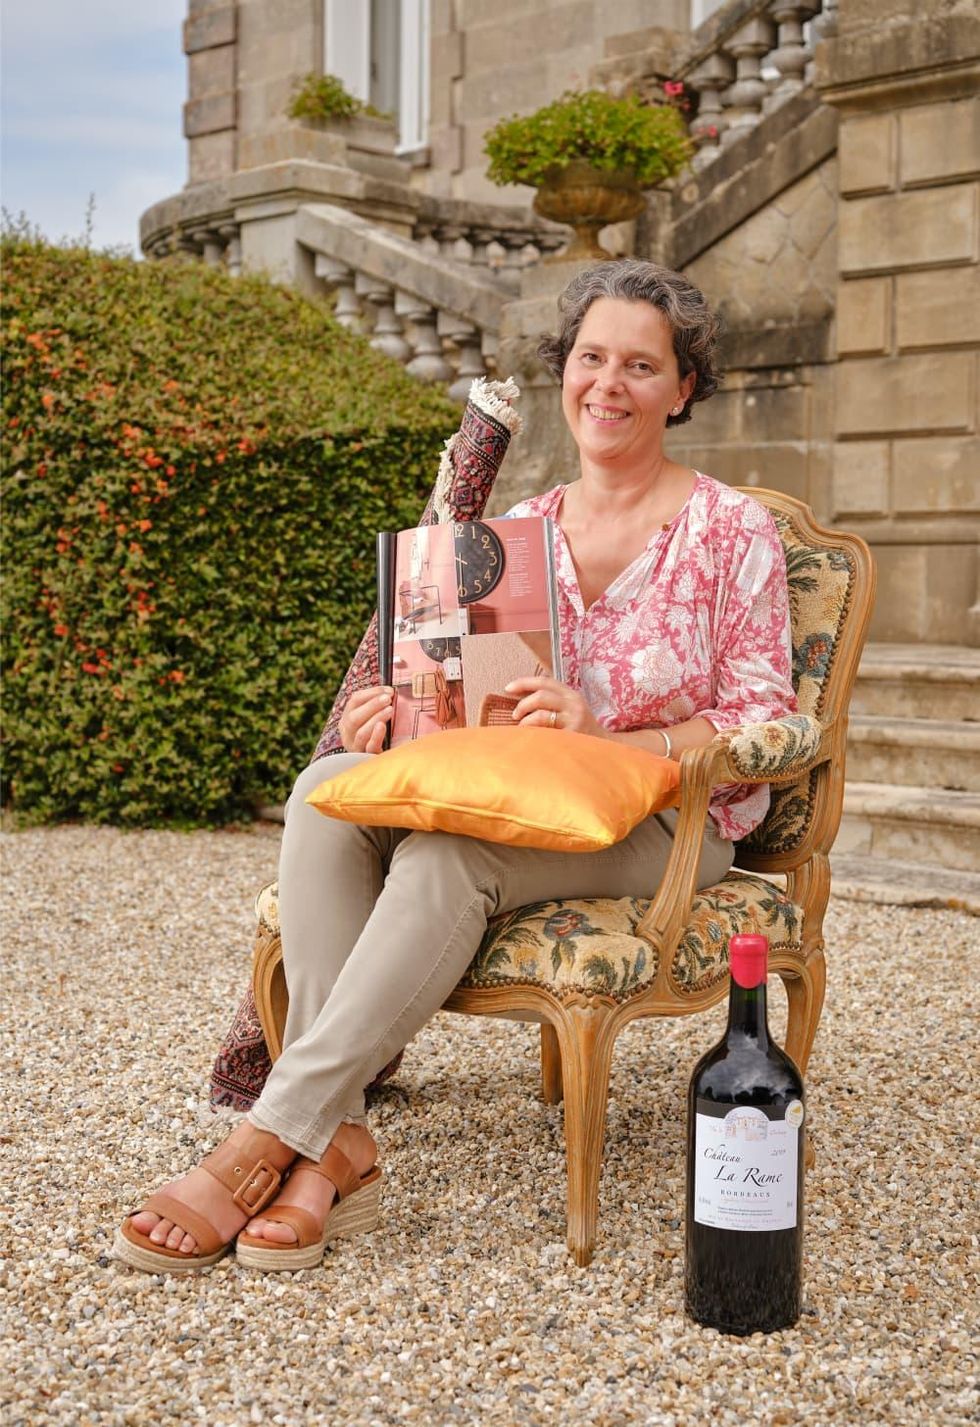 Winemaker Angelique Armand